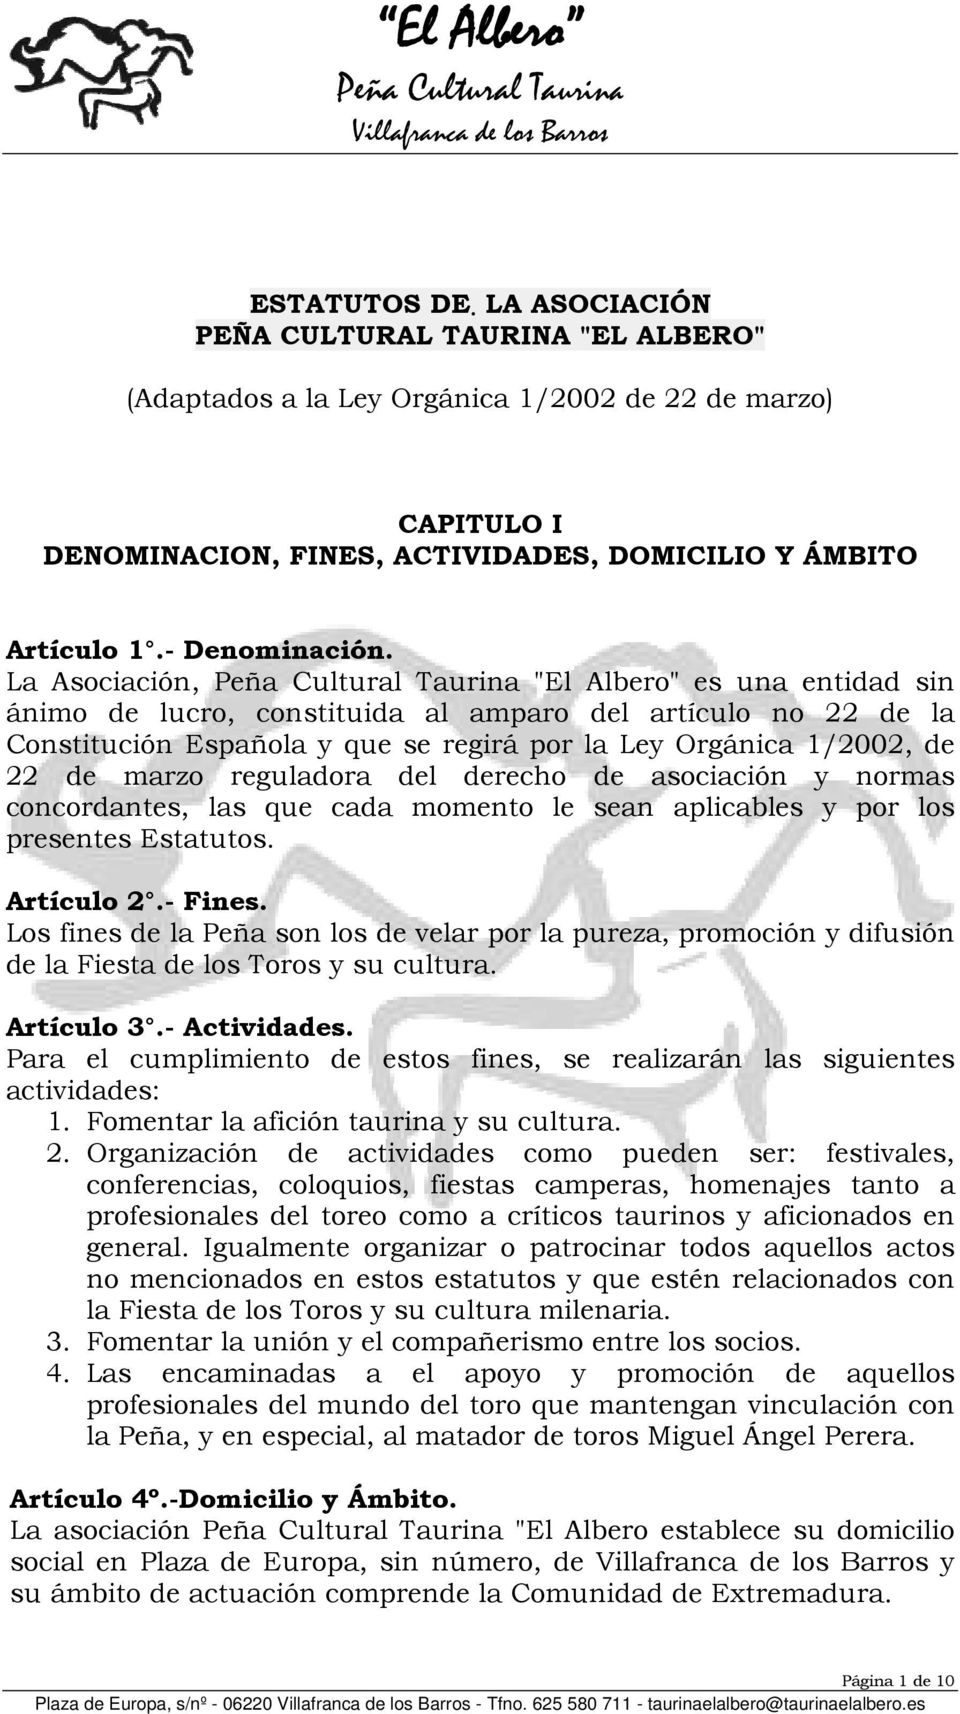 La Asociación, "El Albero" es una entidad sin ánimo de lucro, constituida al amparo del artículo no 22 de la Constitución Española y que se regirá por la Ley Orgánica 1/2002, de 22 de marzo